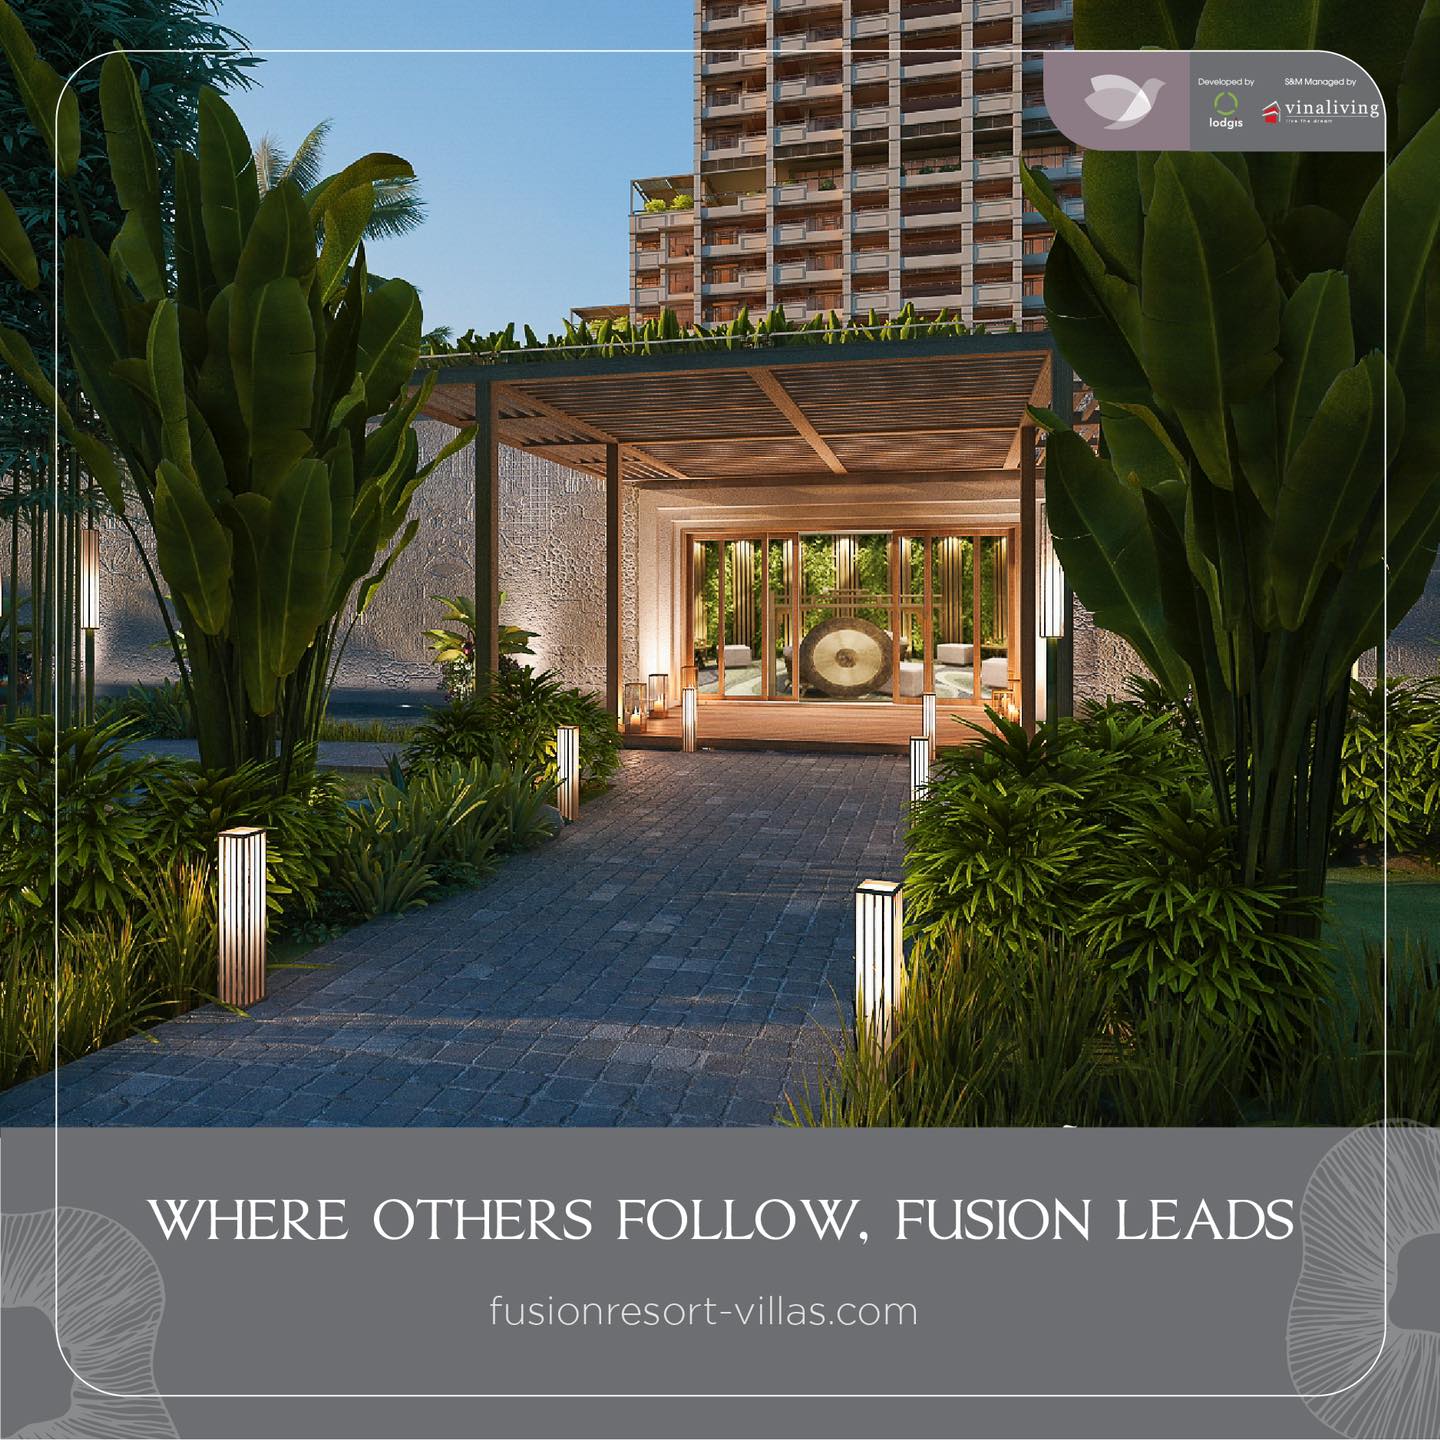 Cuộc sống đỉnh cao với những giá trị nổi bật tại Fusion Resort & Villas Đà Nẵng - Ảnh chính